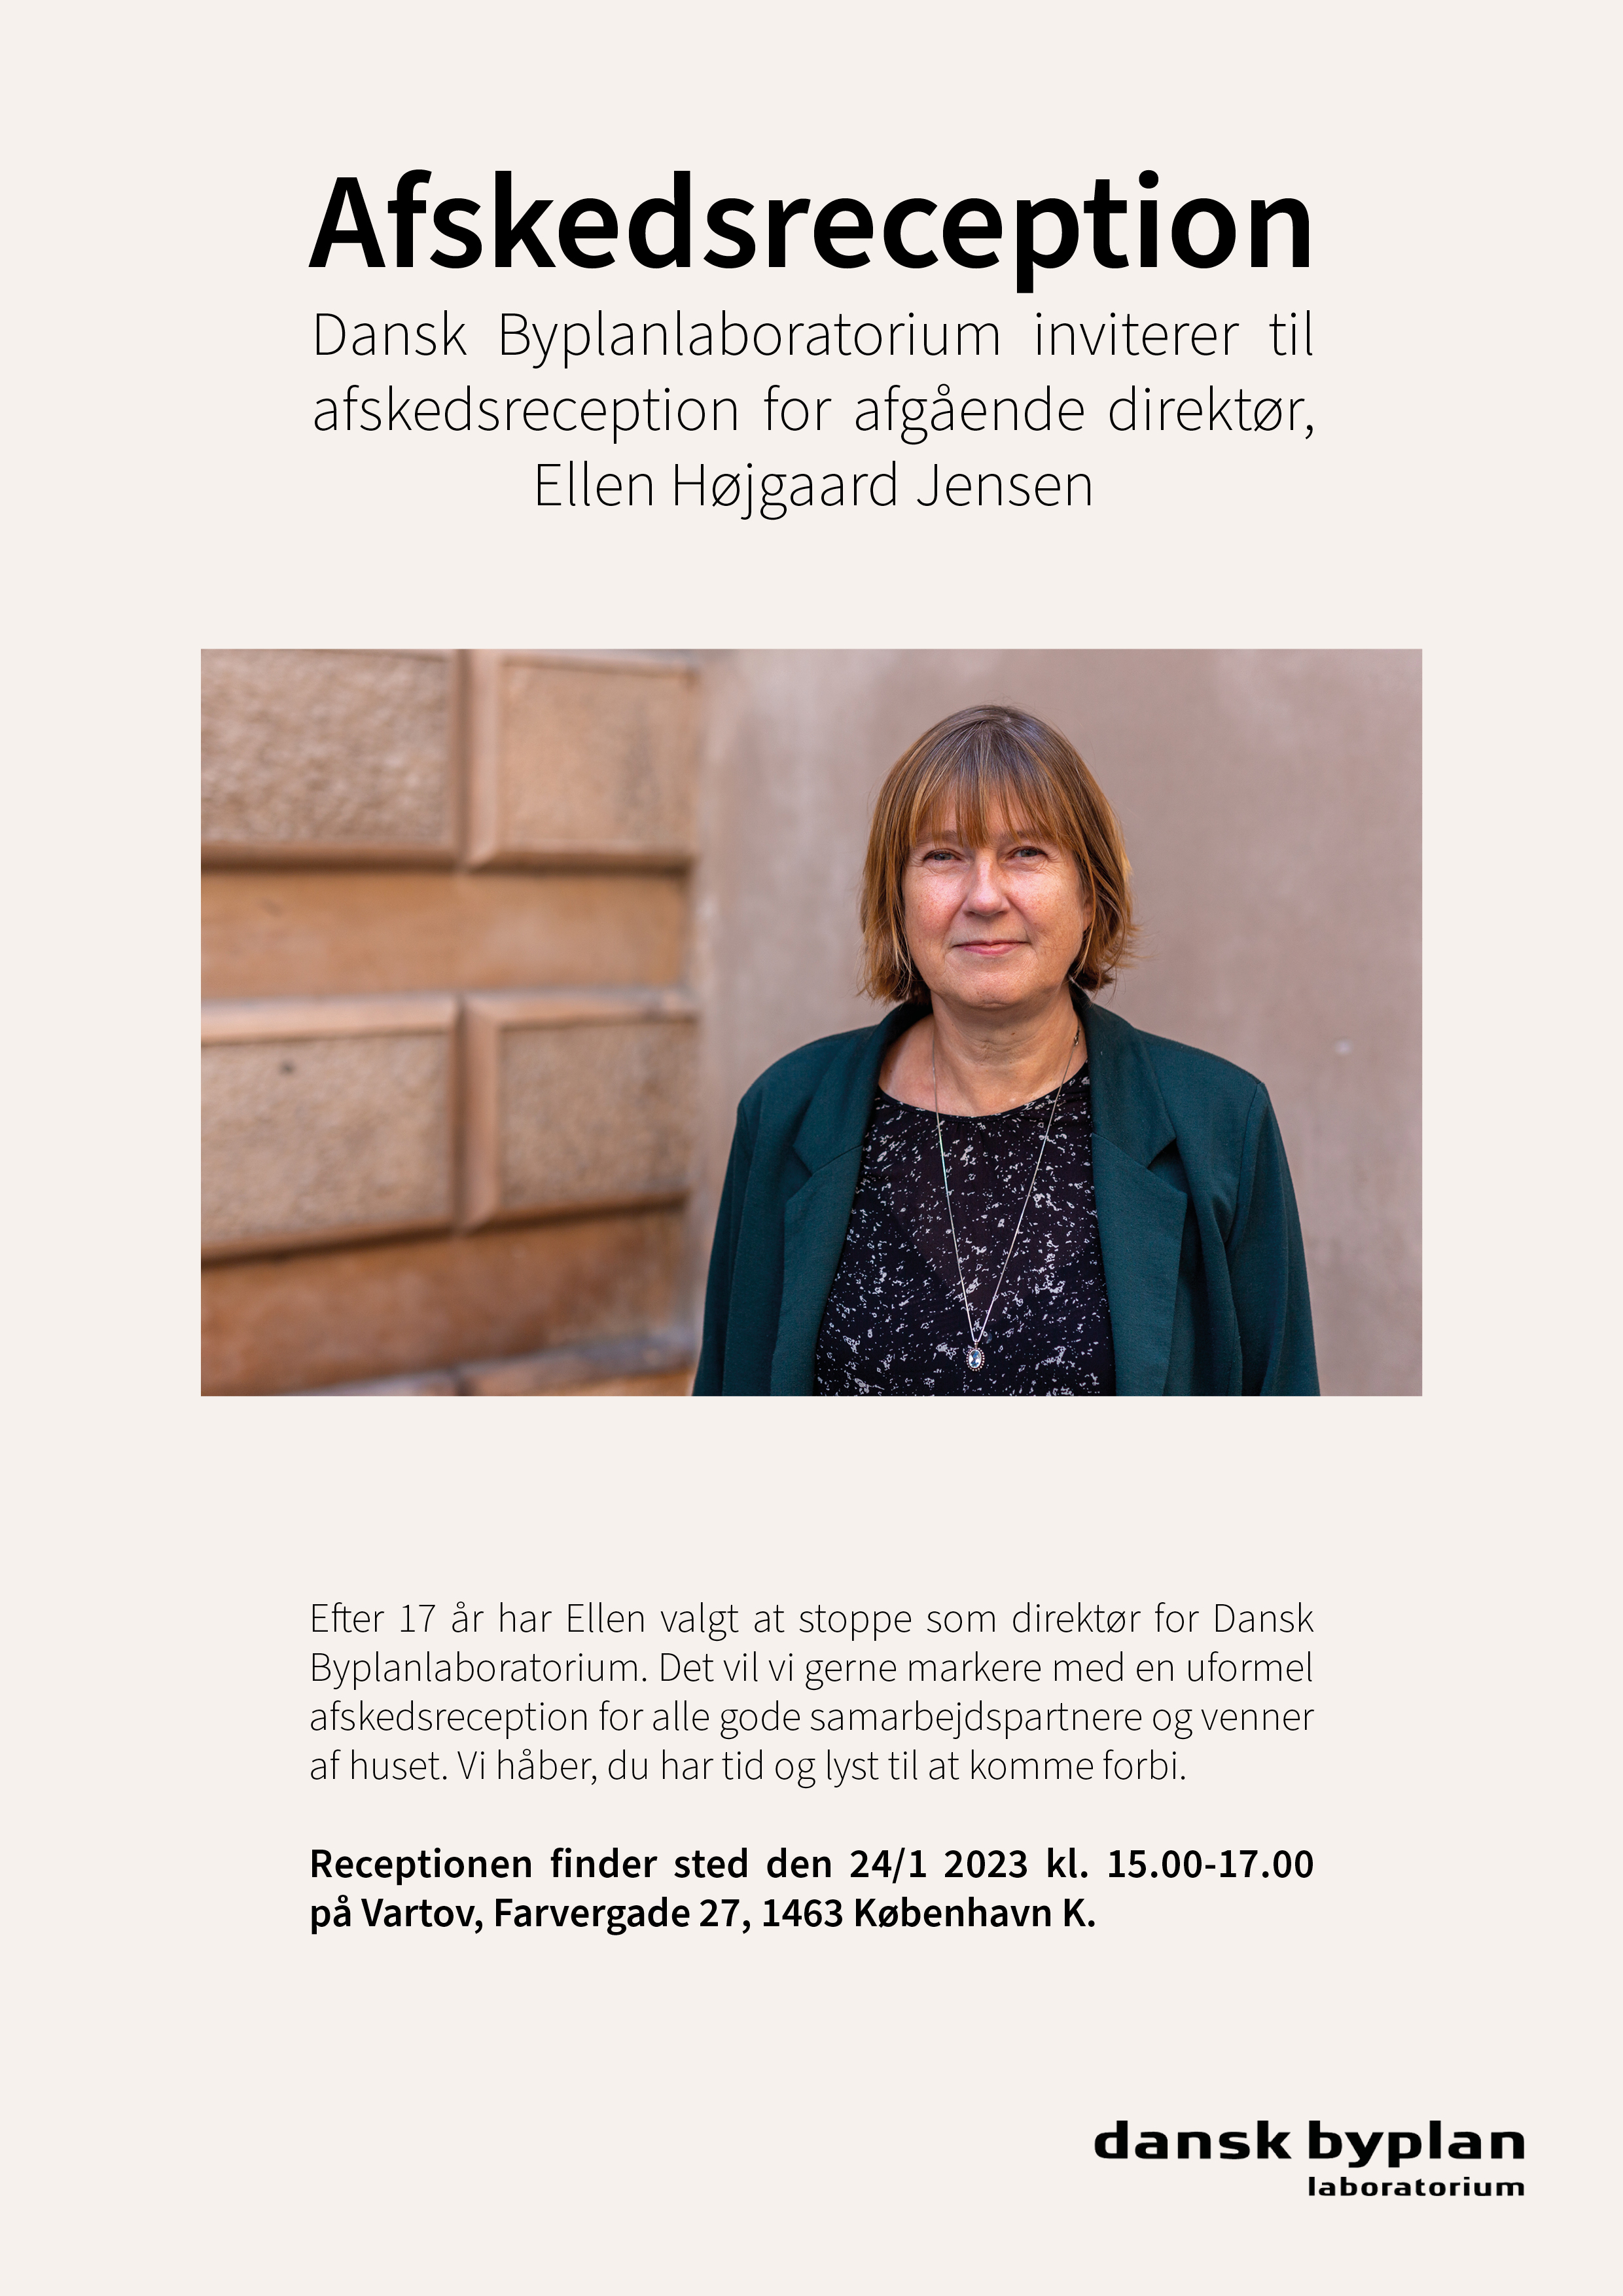 Afskedsreception for Ellen Højgaard Jensen